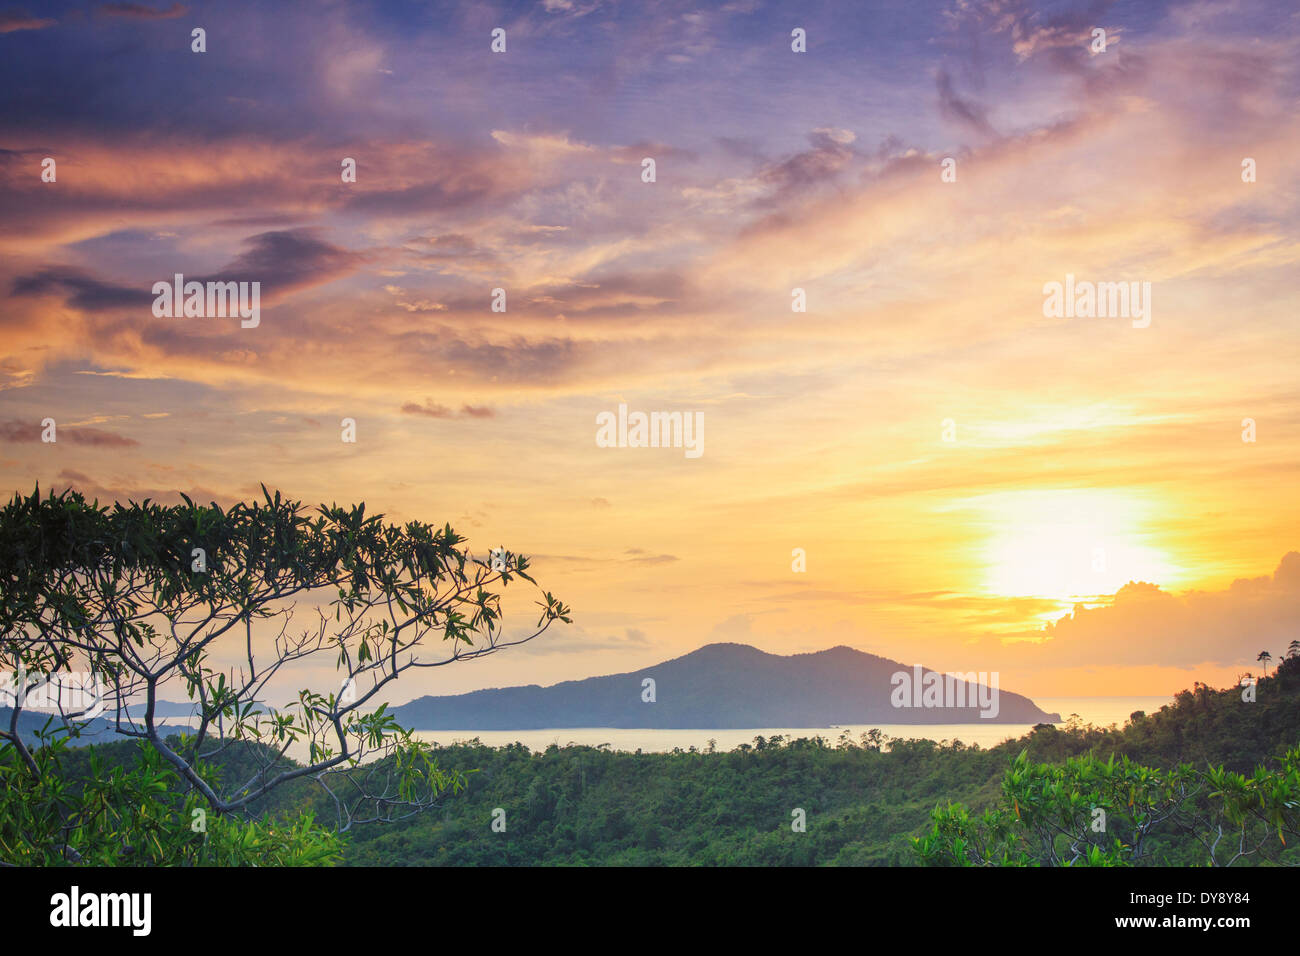 Filippine, Palawan Port Barton, vista in elevazione del Albaguen Isola e isolotti circostanti Foto Stock